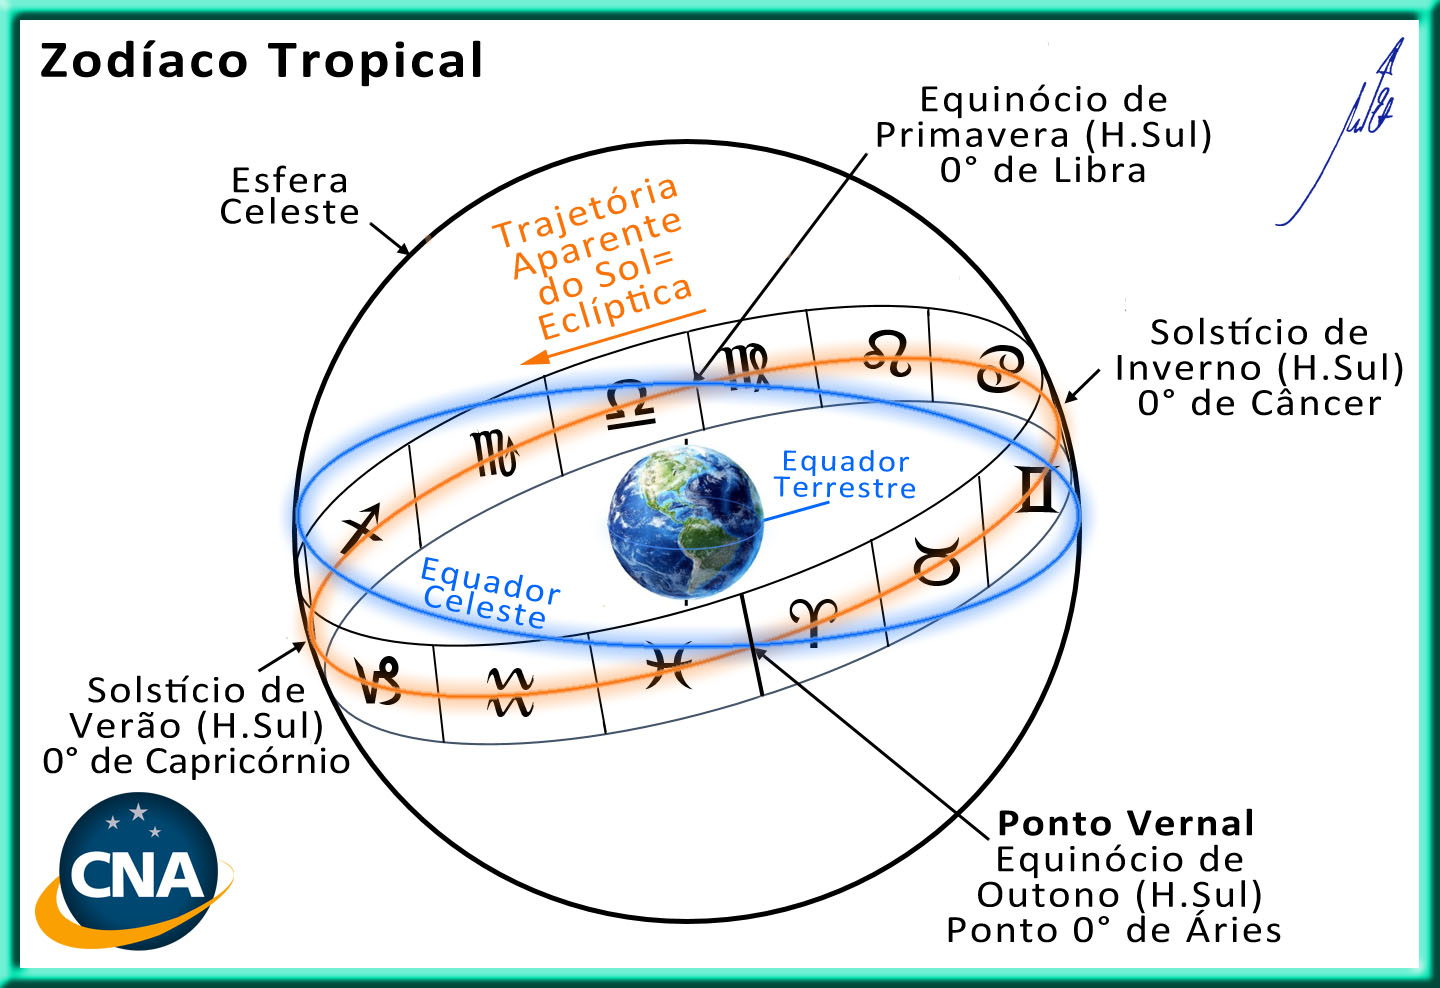 Zodiaco Tropical - Gráfico - Equador Terrestre - Equador Celeste - Eclíptica